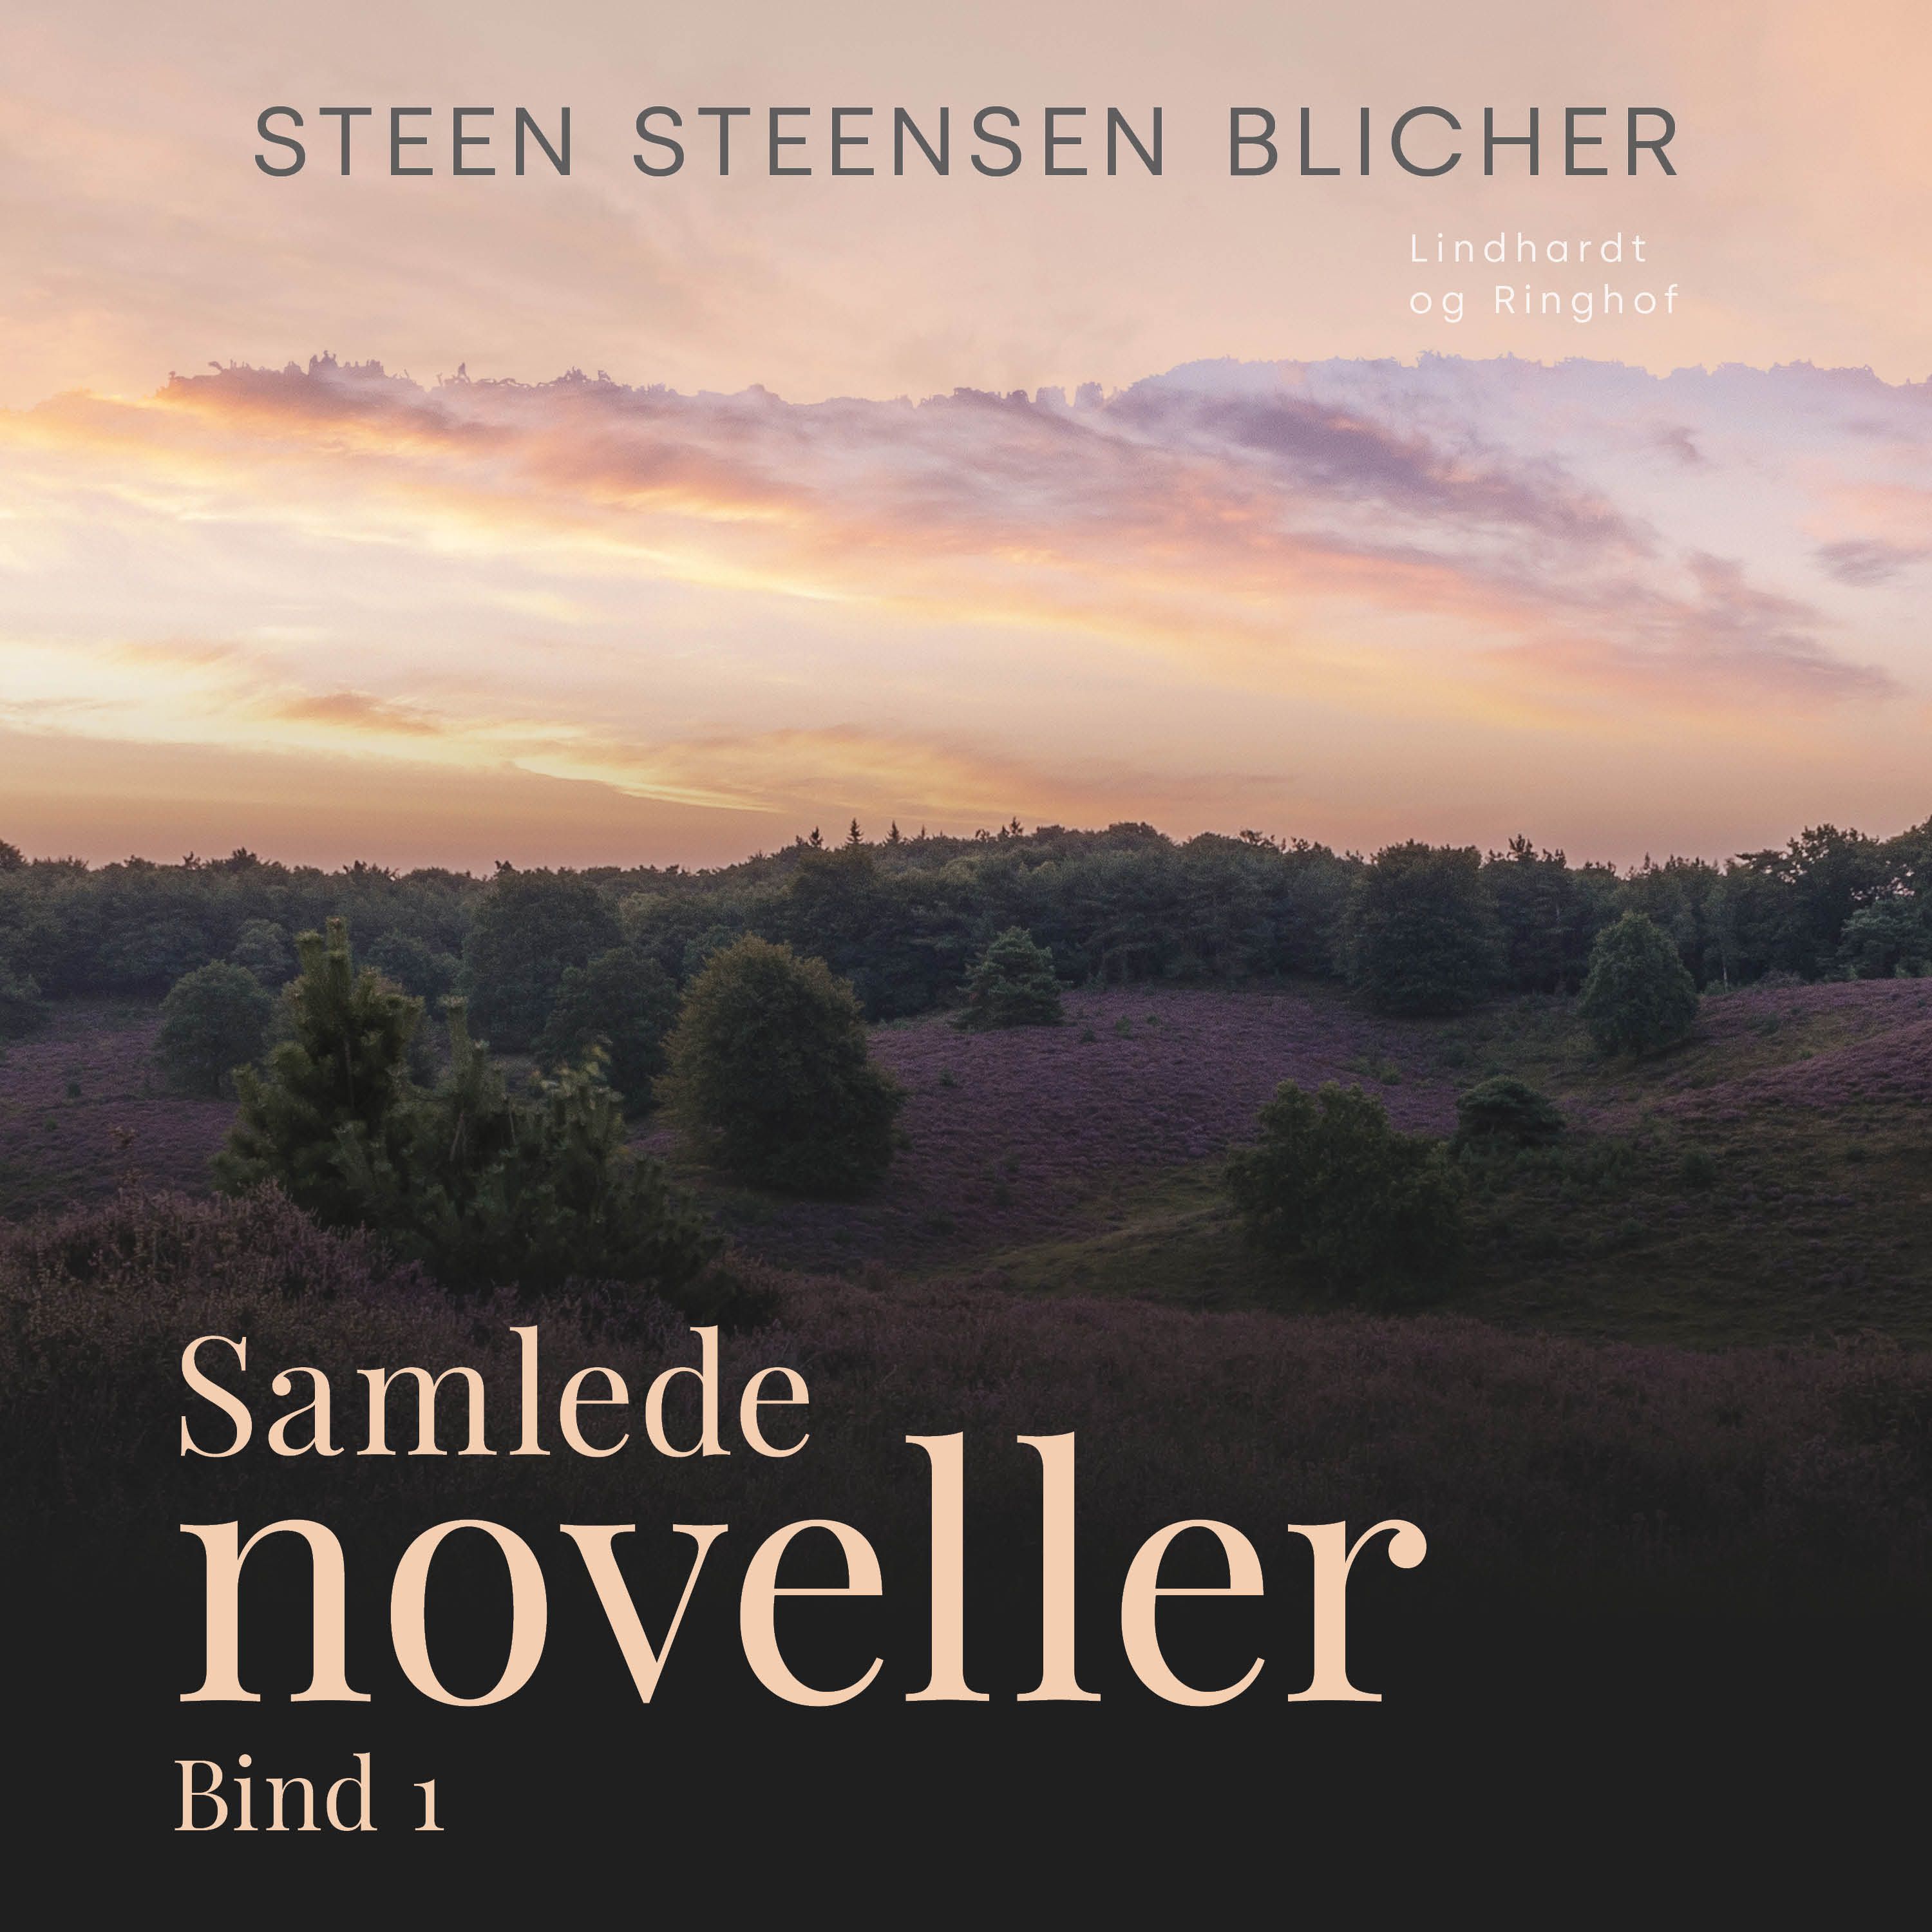 Samlede noveller. Bind 1, lydbog af Steen Steensen Blicher